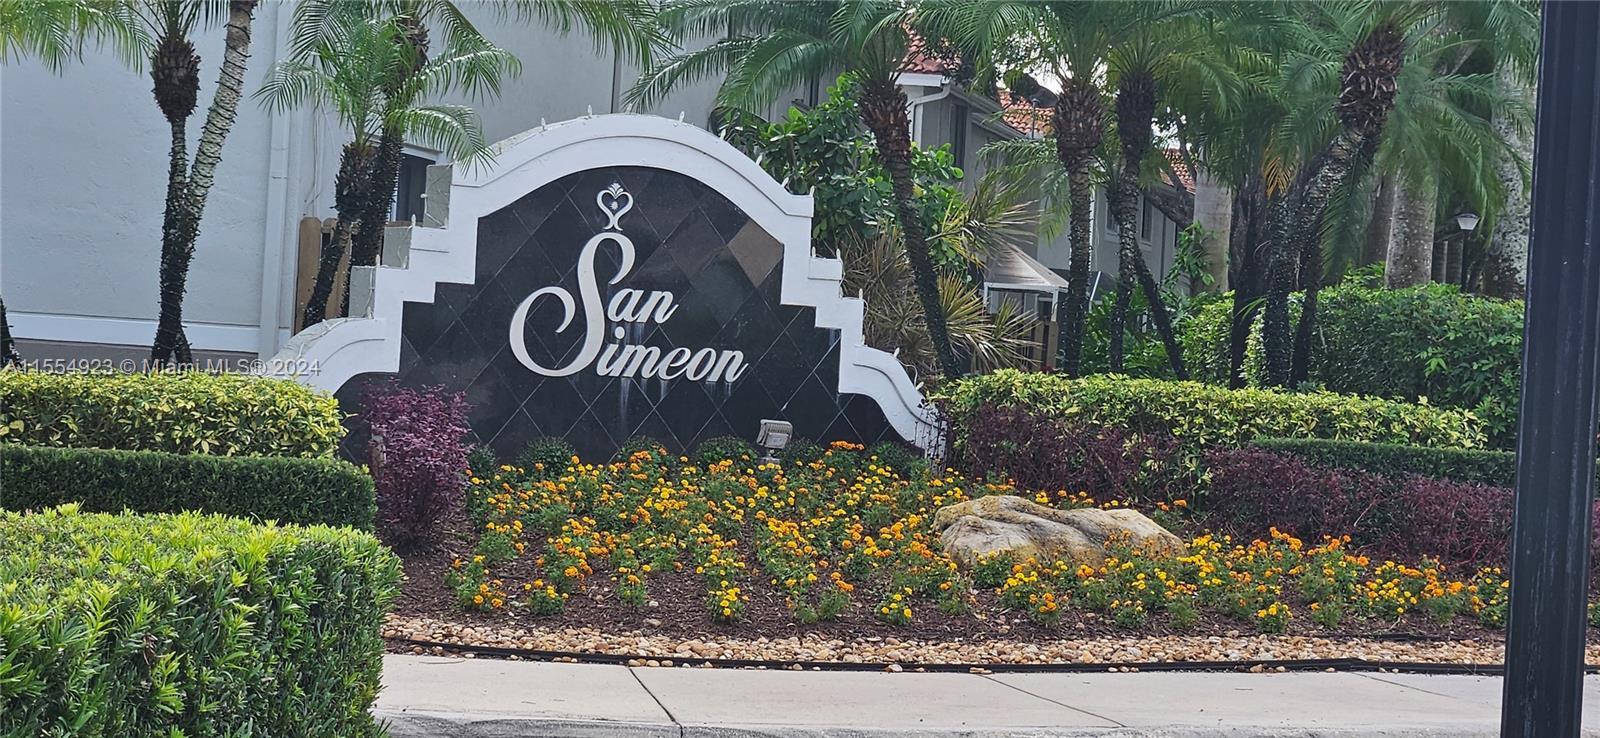 Photo of 3619 San Simeon Cir in Weston, FL